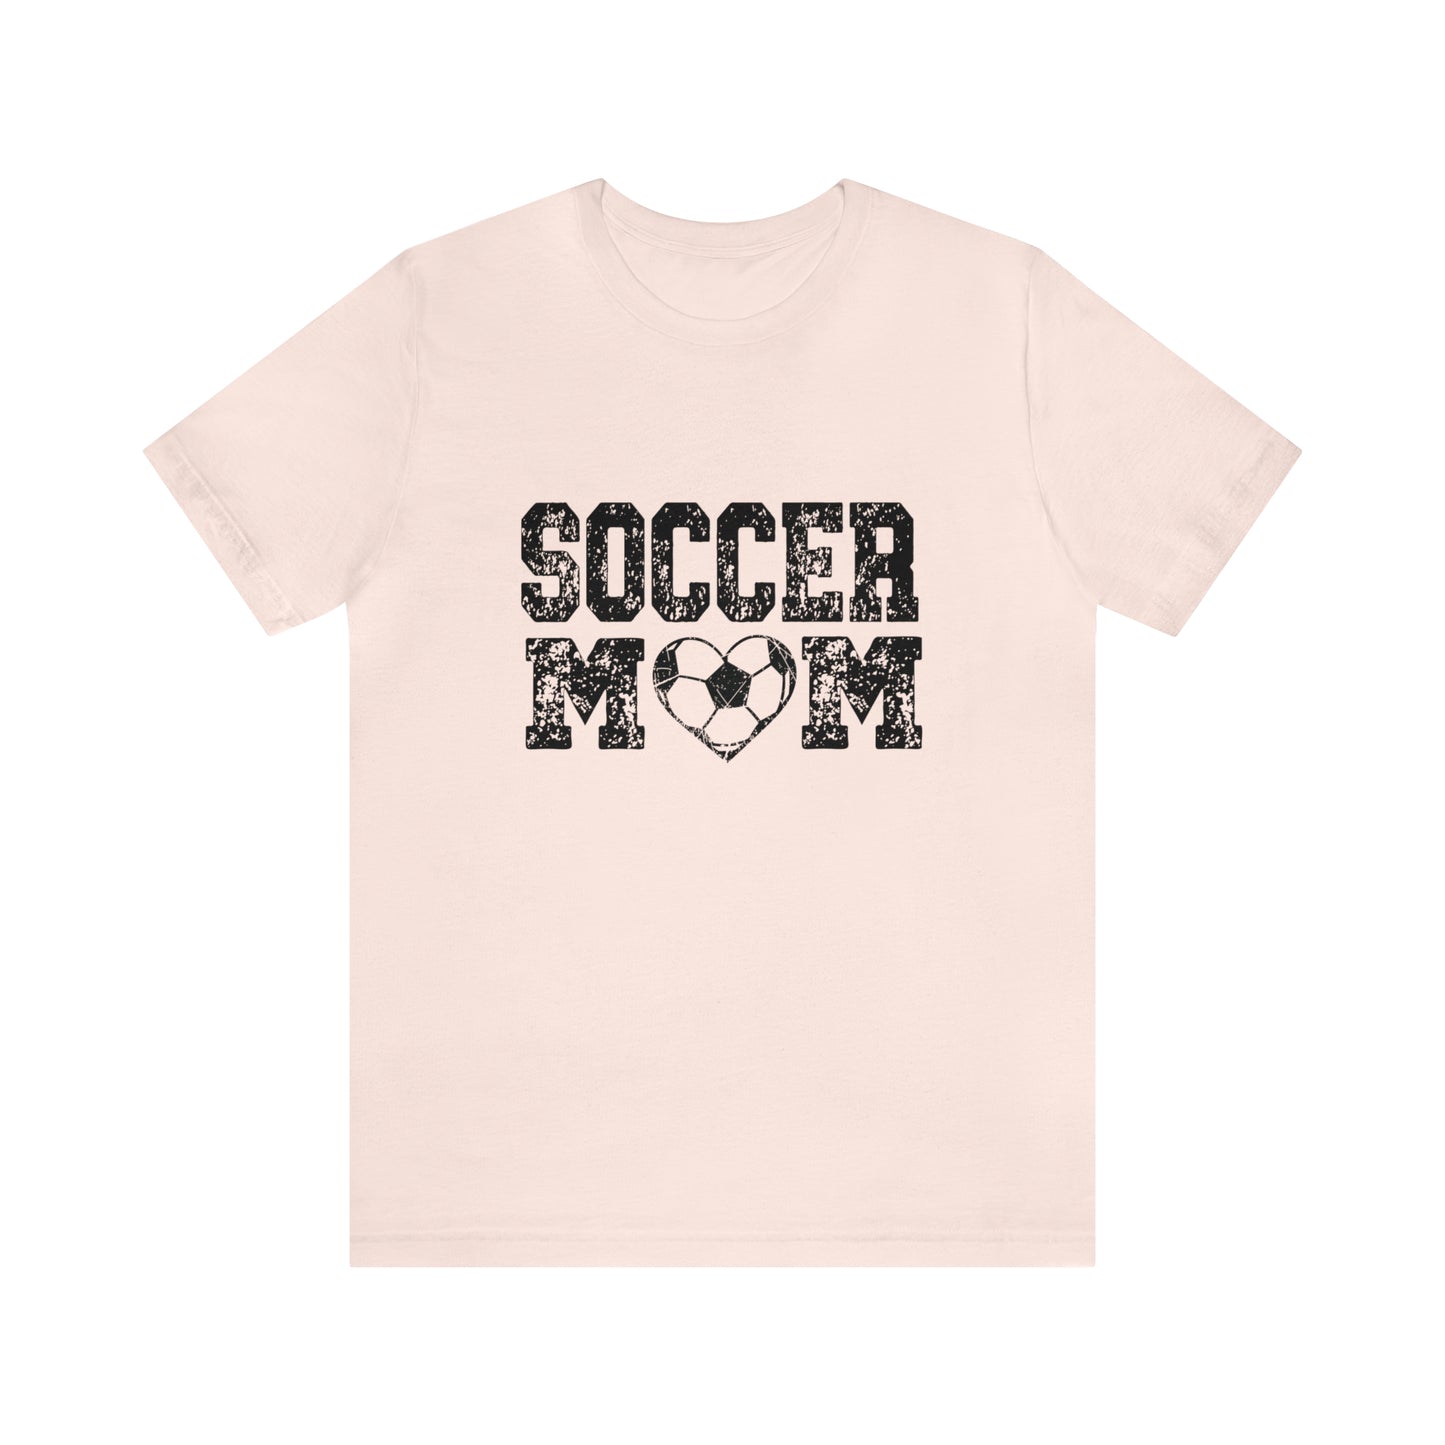 Soccer mom Short Sleeve Women's Tee